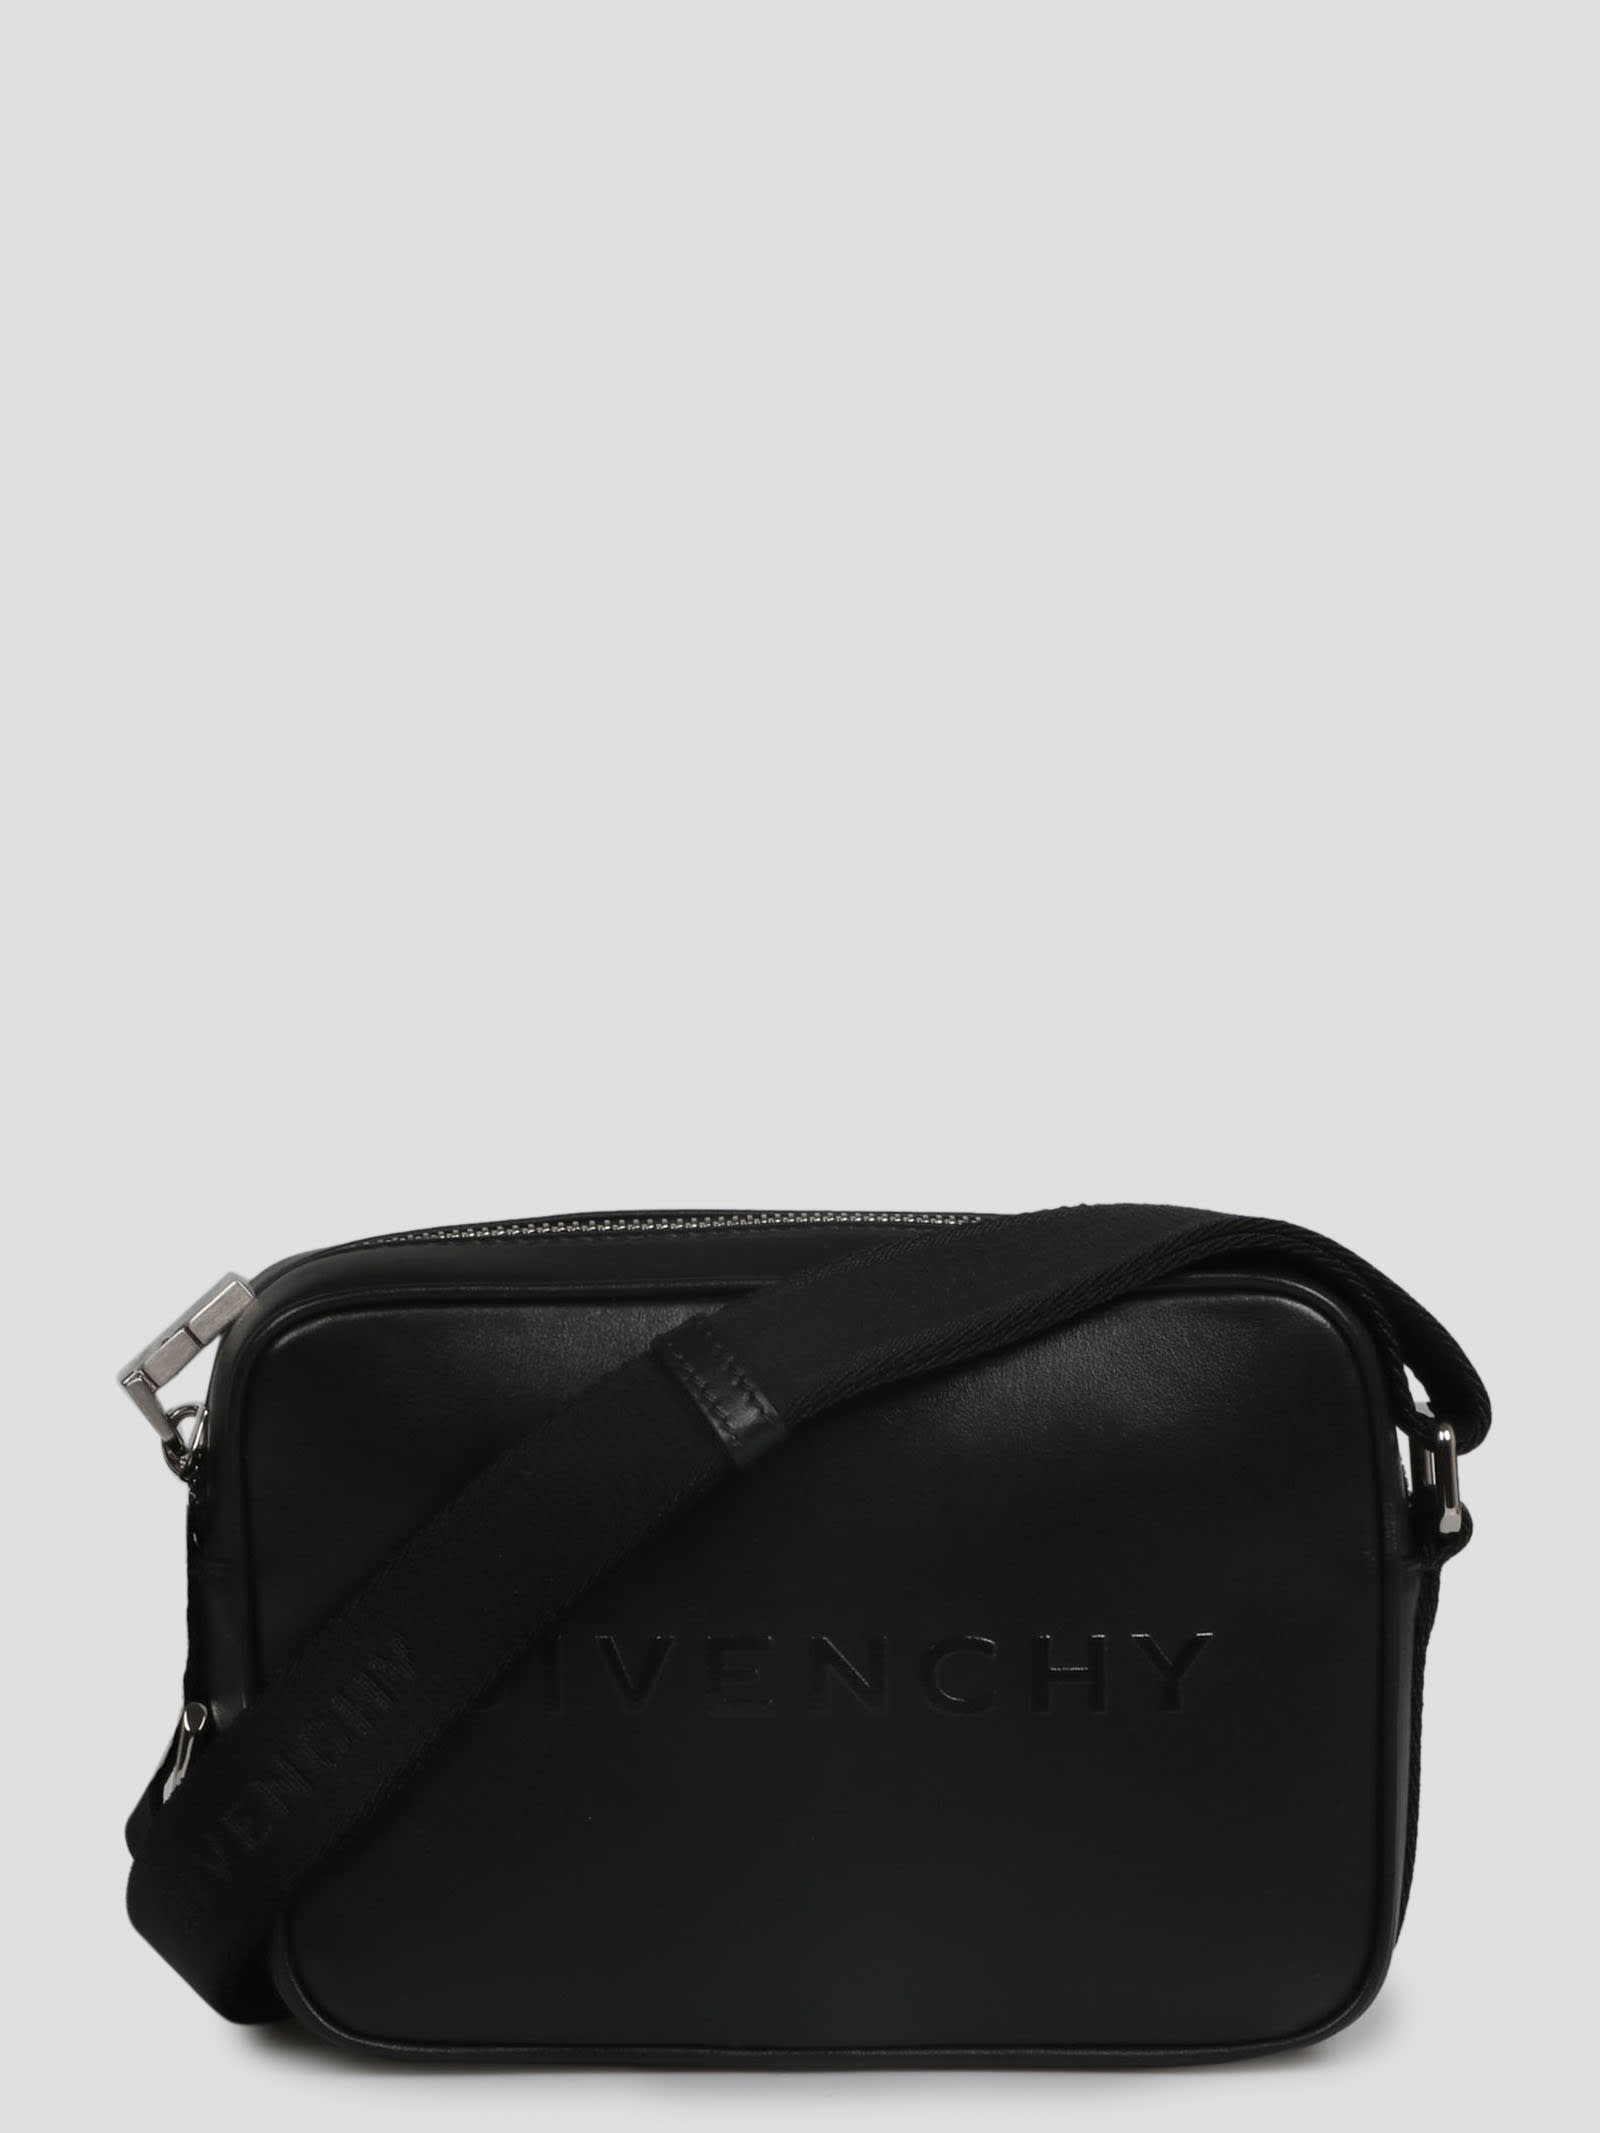 Givenchy Camera Bag